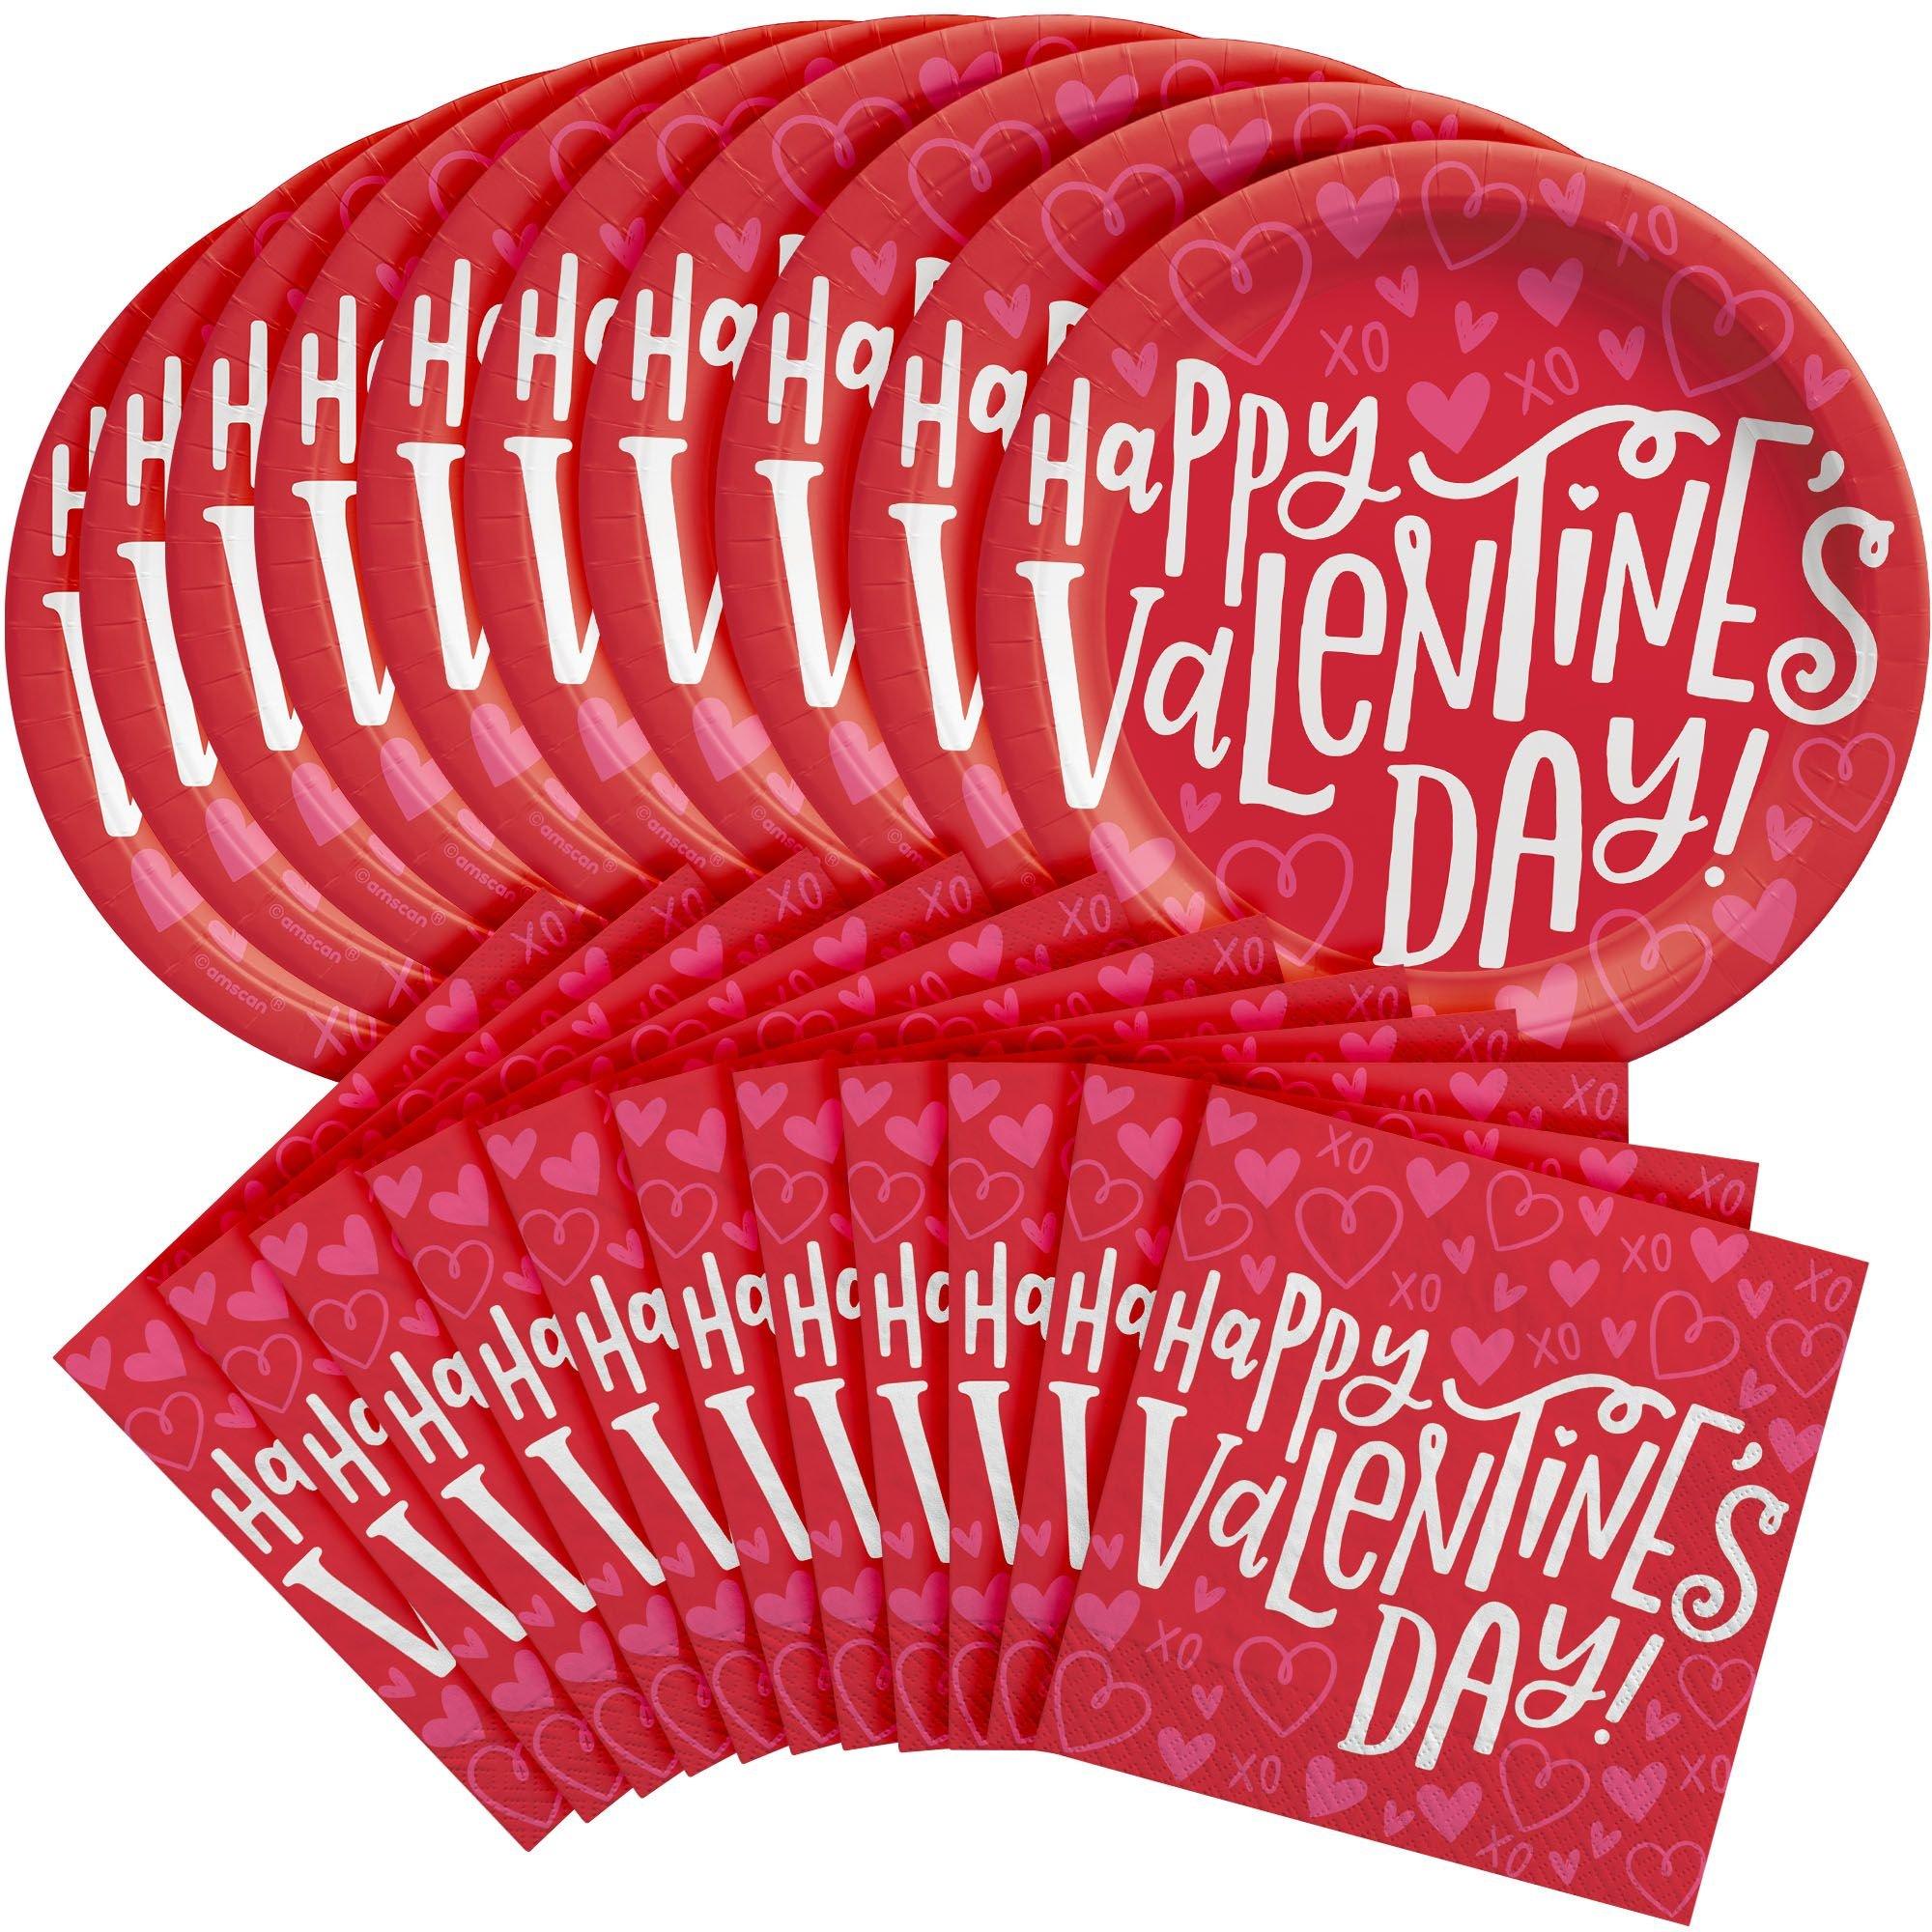 7236 - Happy Valentine's Day